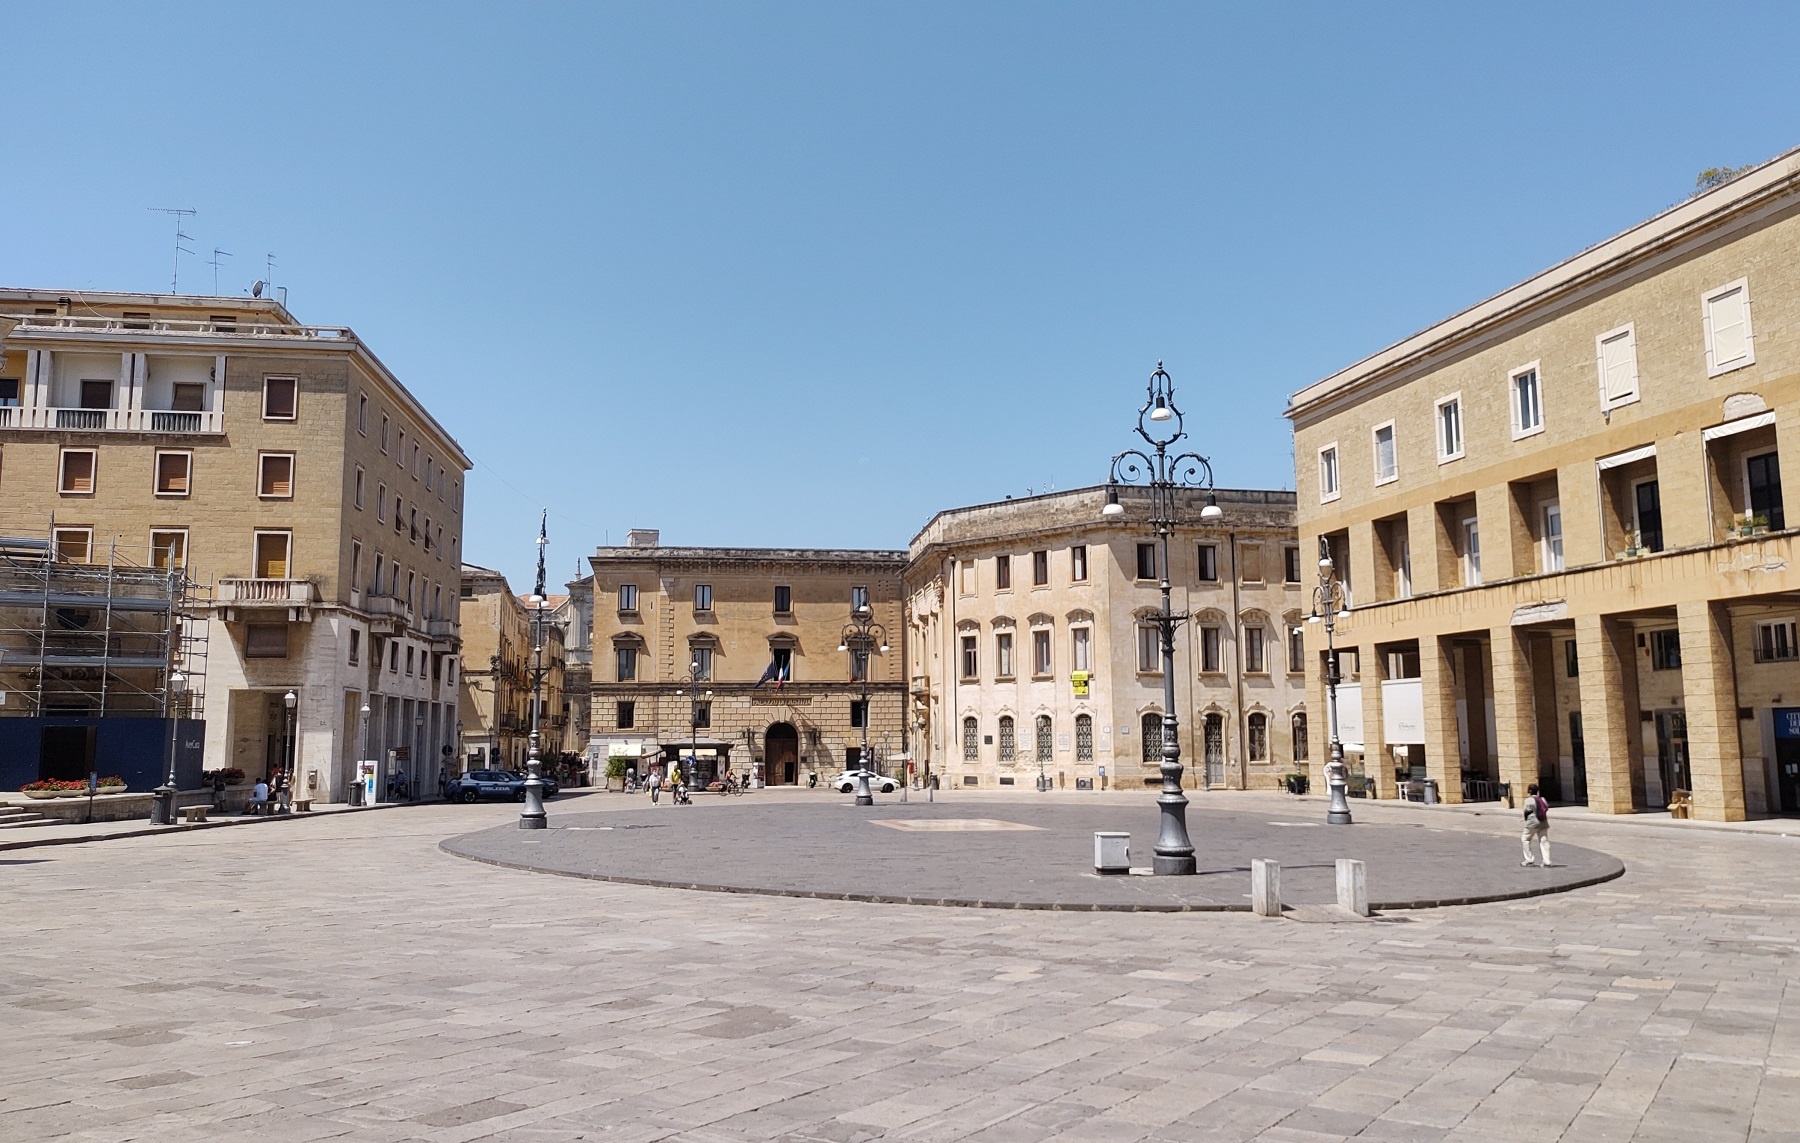 Piazza Sant'Oronzo, Lecce